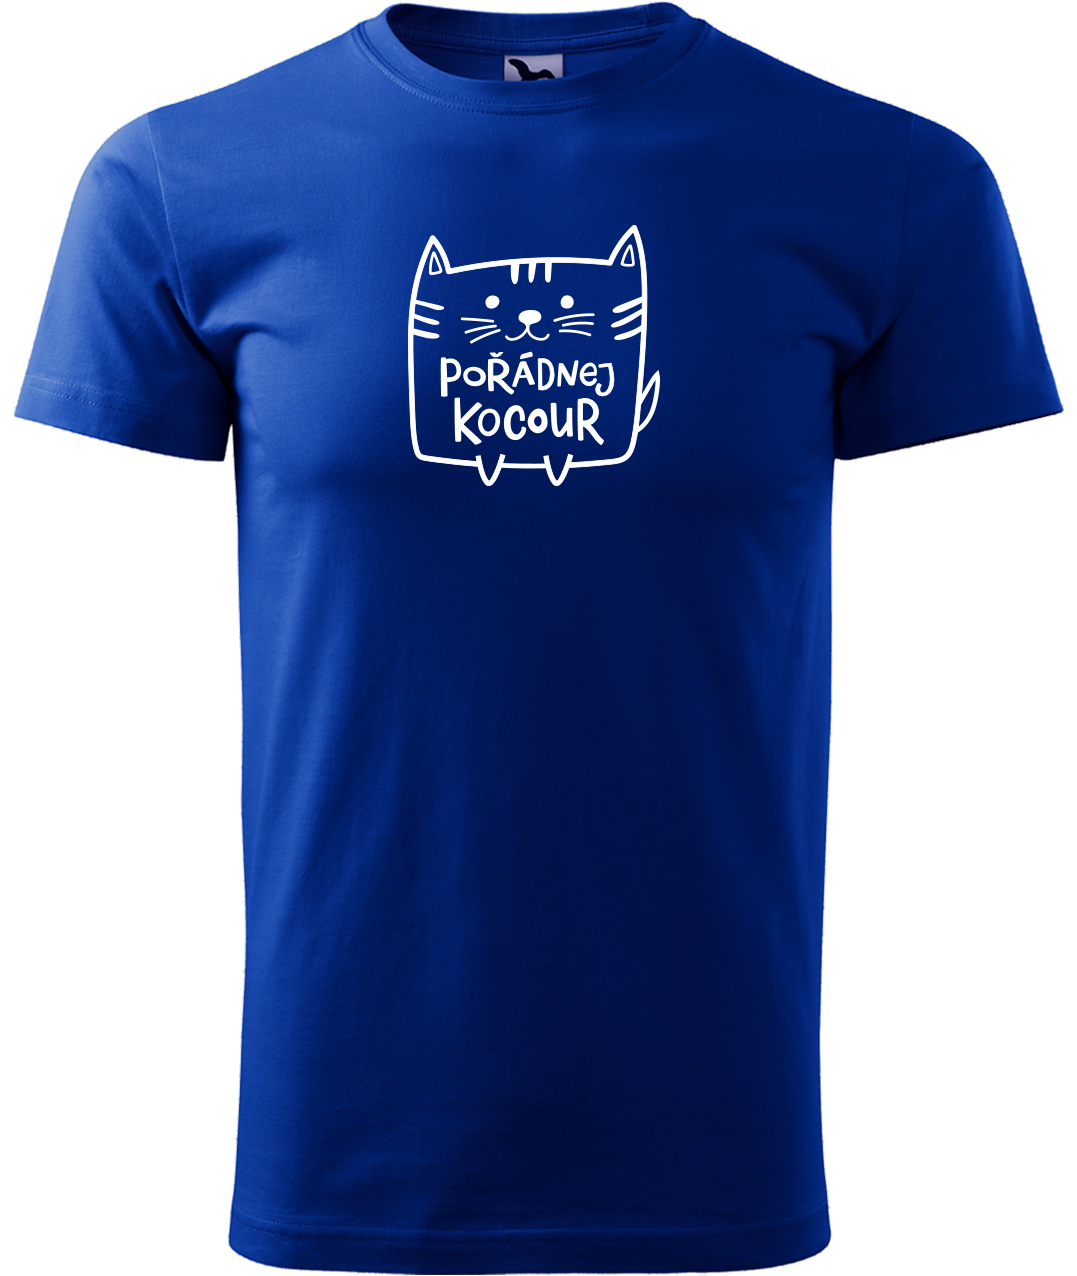 Pánské tričko s kočkou - Pořádnej kocour Velikost: XL, Barva: Královská modrá (05)